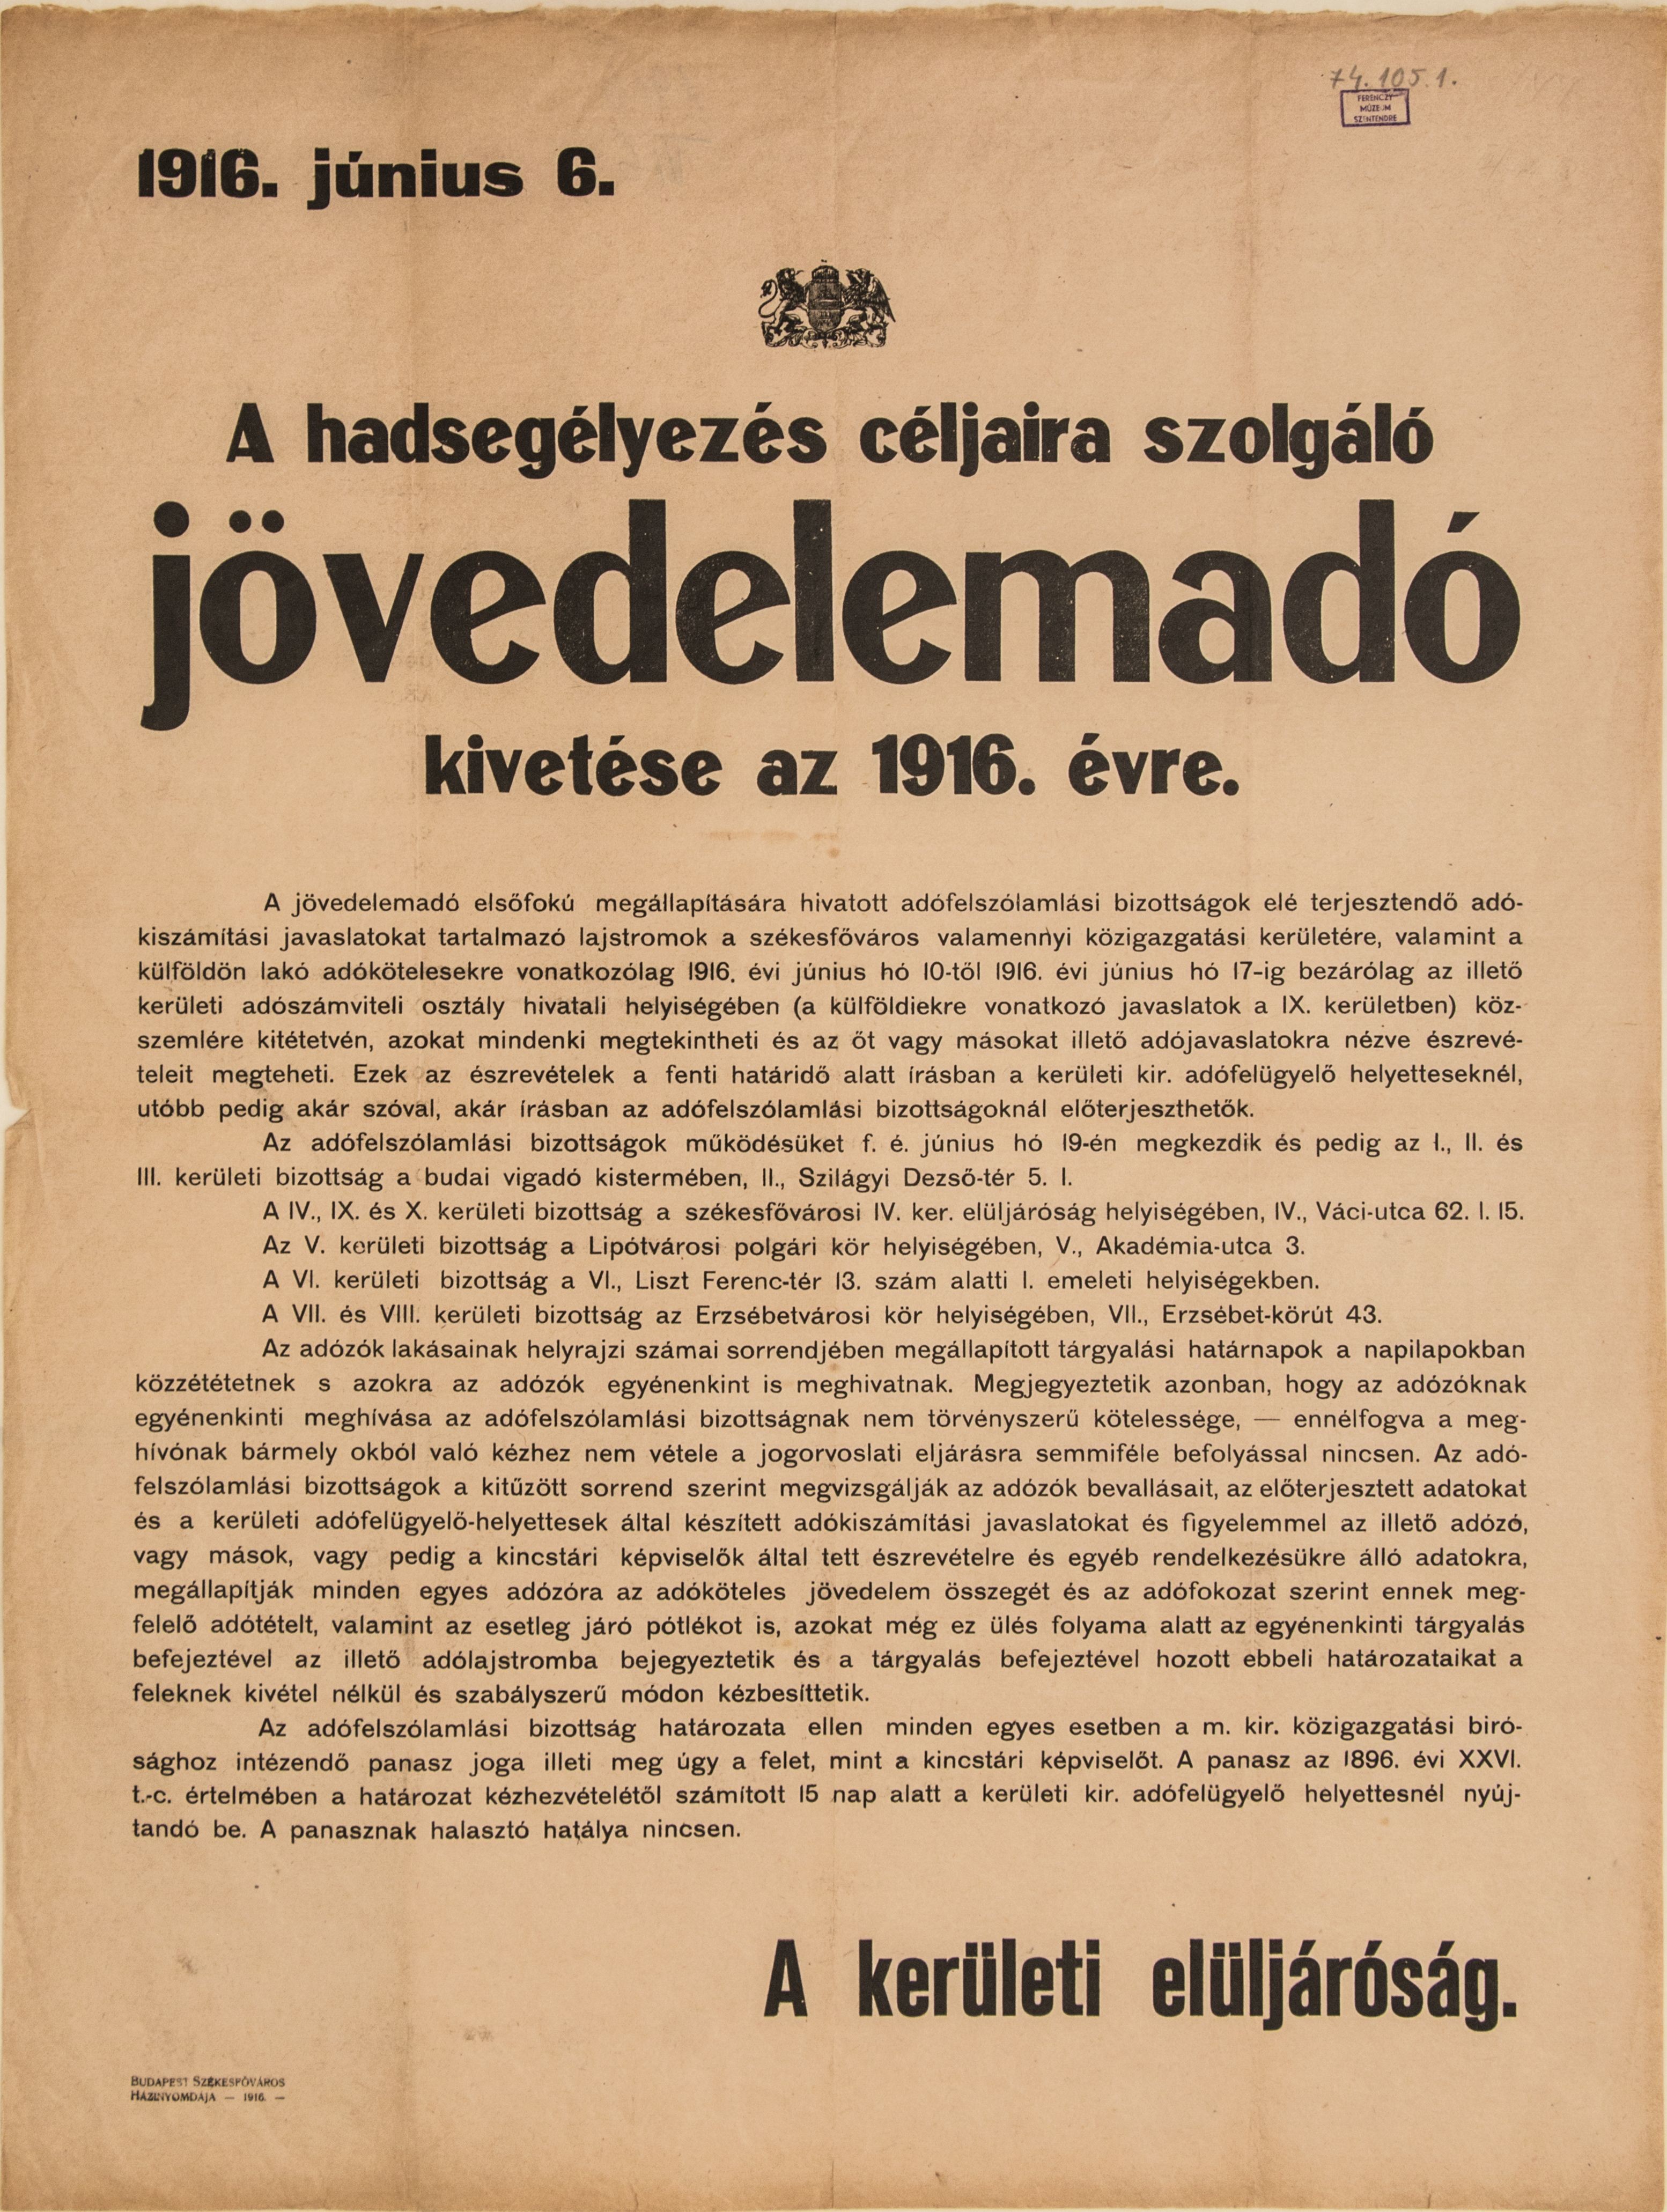 Hadsegélyezés céljaira szolgáló jövedelemadó bevezetéséről, 1916.06.06. (Ferenczy Múzeumi Centrum CC BY-NC-SA)